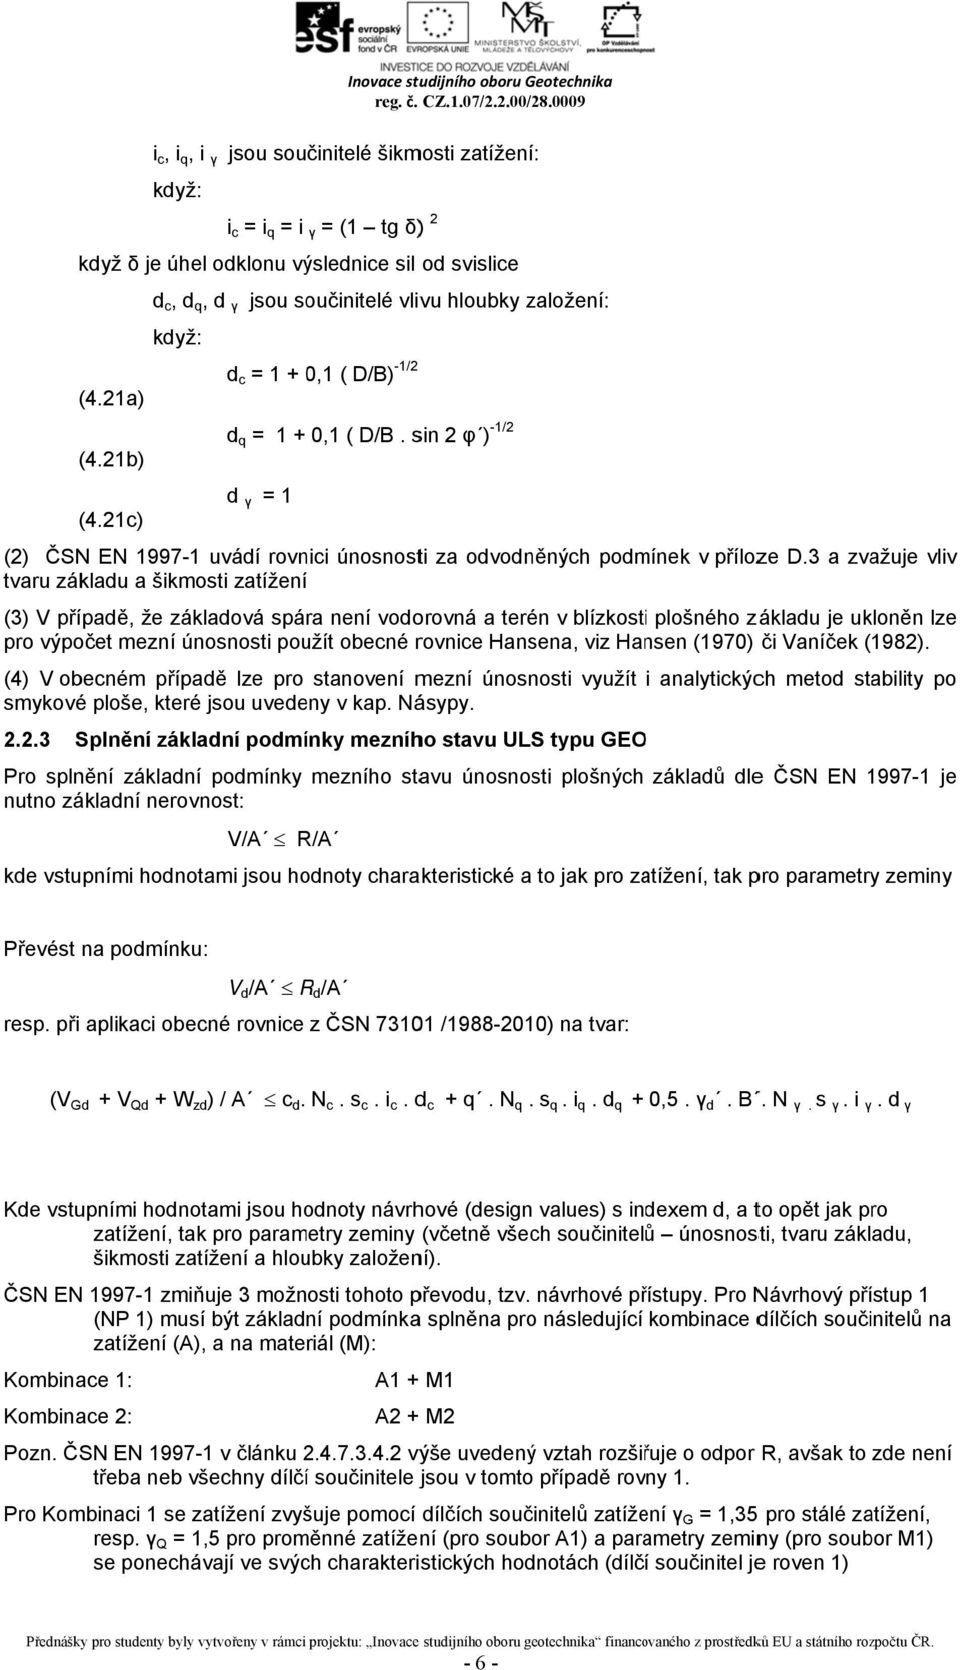 21c) (2) ČSNN EN 1997-11 uváí rovnici únosnosti za ovoněných pomínek v příloze D.